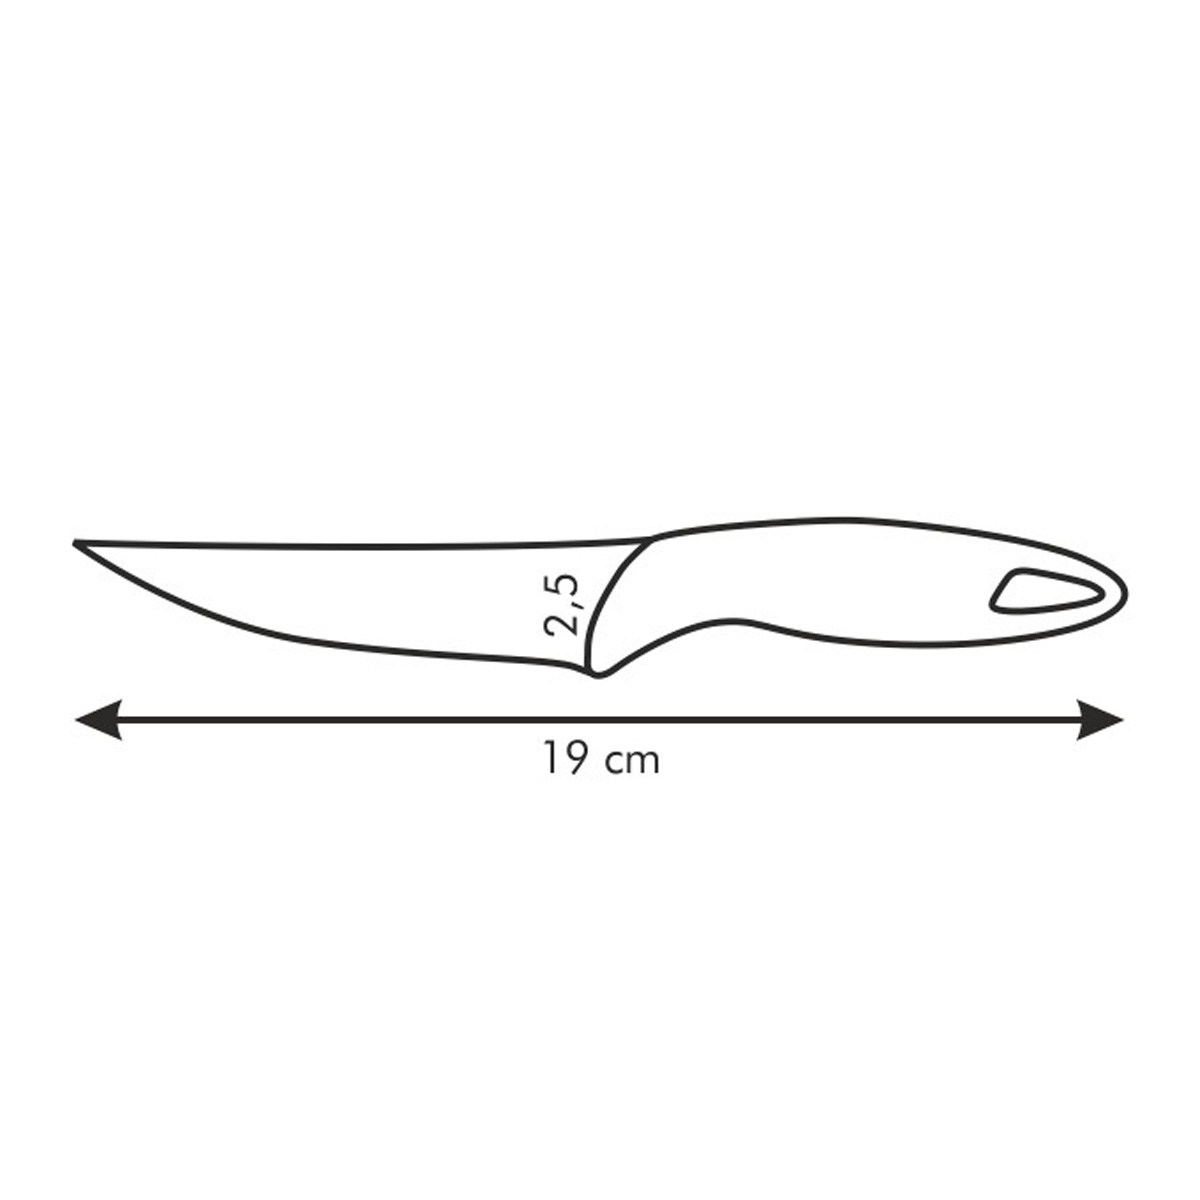 Nôž univerzálny PRESTO 12 cm